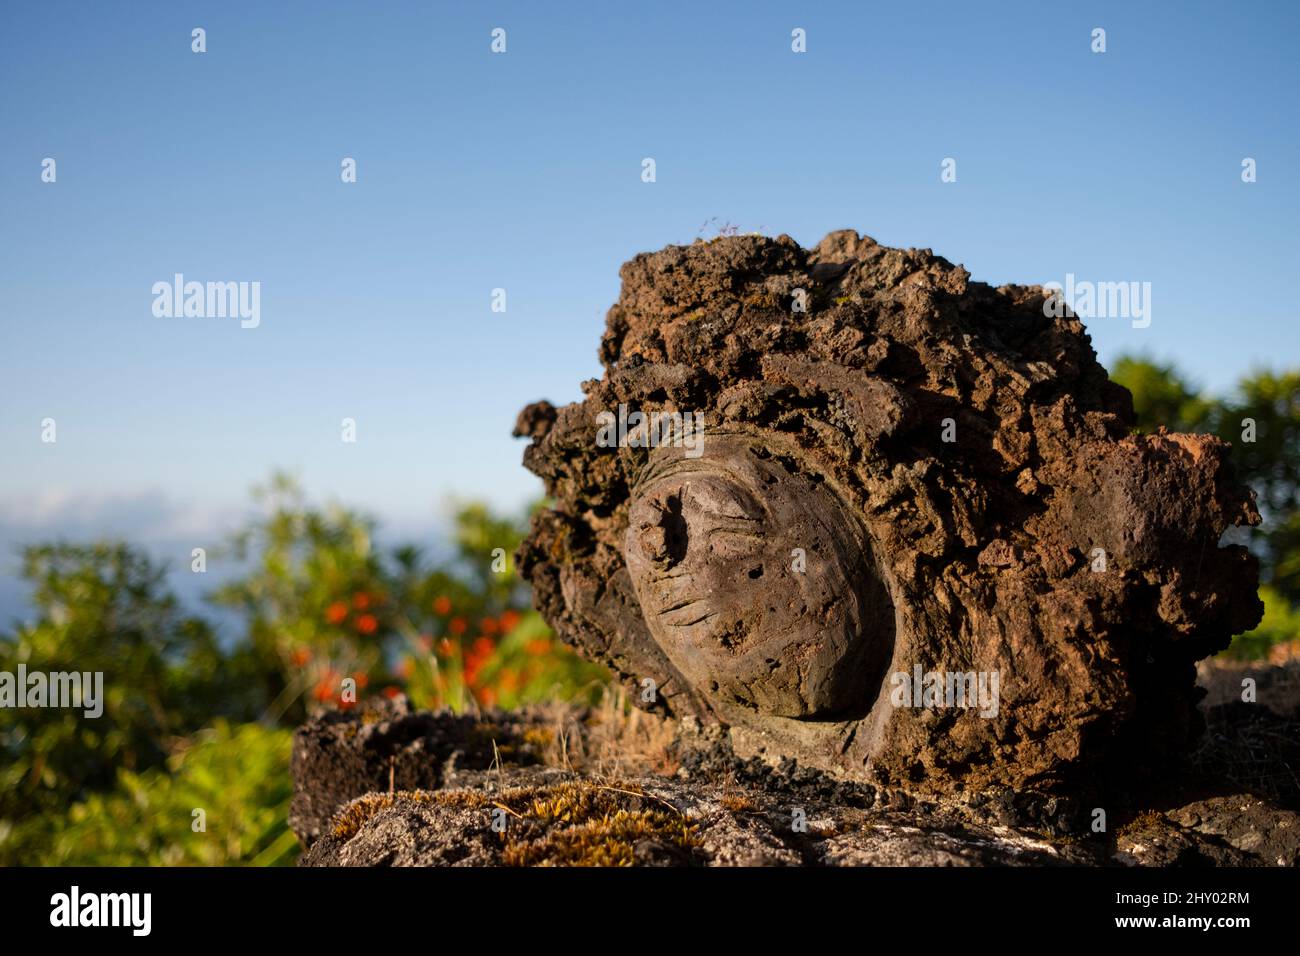 Pico, Portugal - 04 août 2021 : sculpture en pierre de sourire Banque D'Images